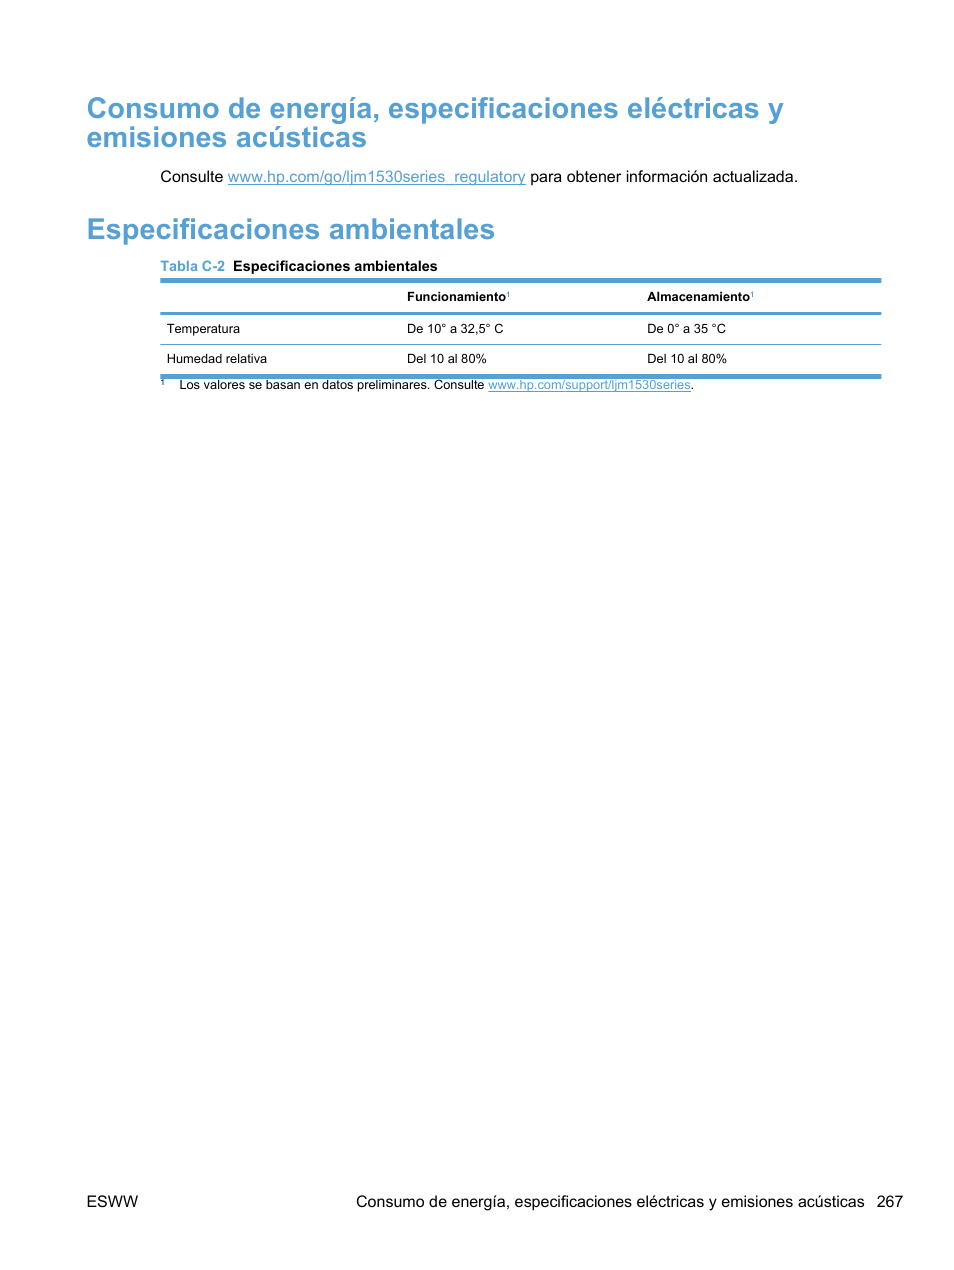 Especificaciones ambientales | HP LaserJet Pro M1536dnf MFP SERIES Manual del usuario | Página 281 / 308